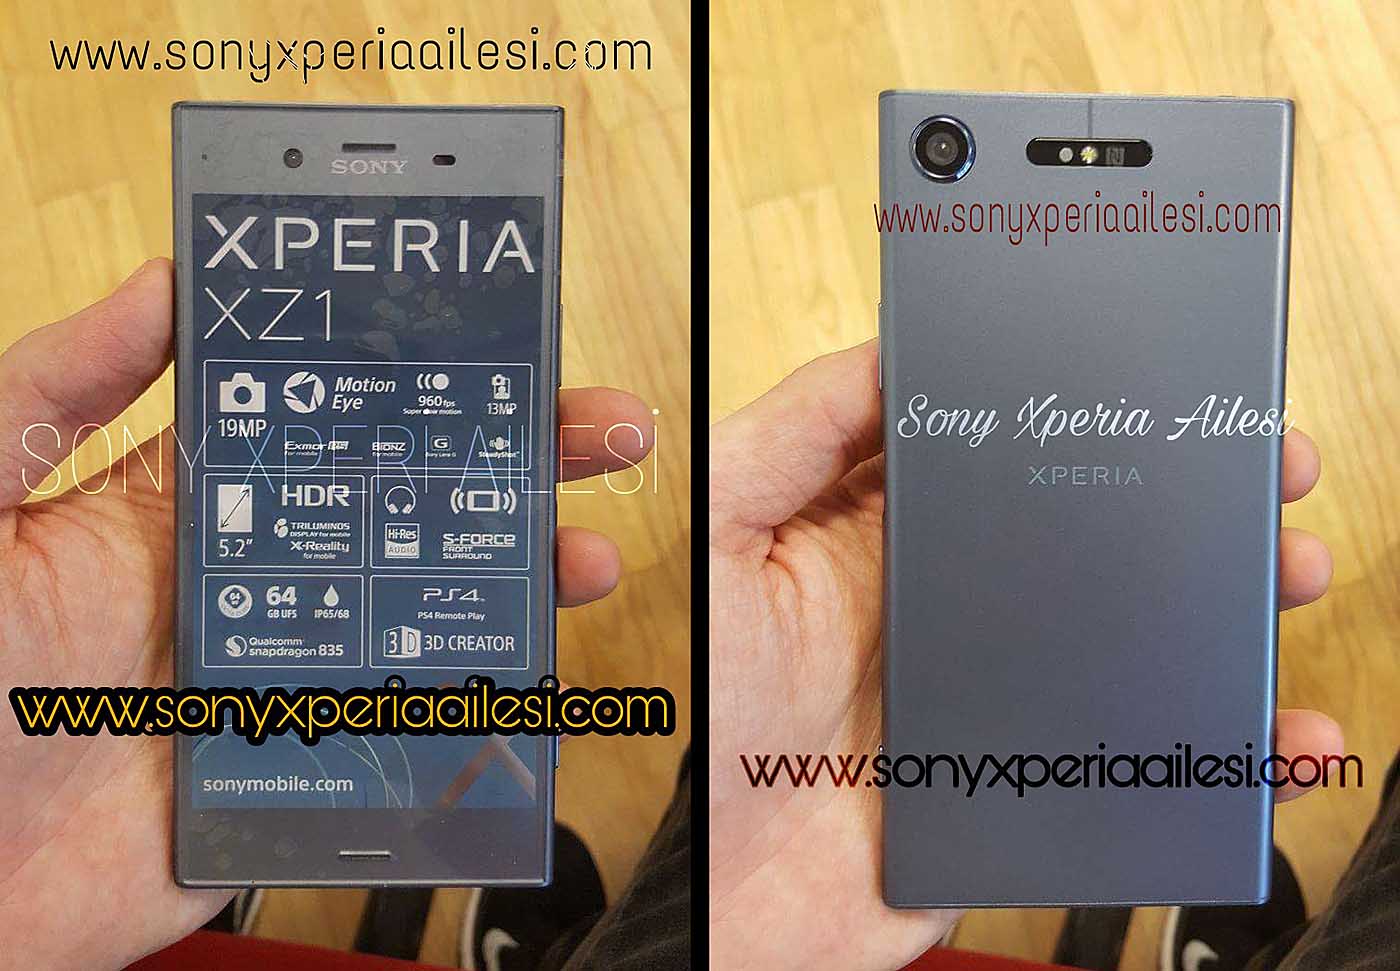 El Sony Xperia XZ1 mantiene el diseño de líneas rectas y amplios marcos superior e inferior de las últimas series Xperia